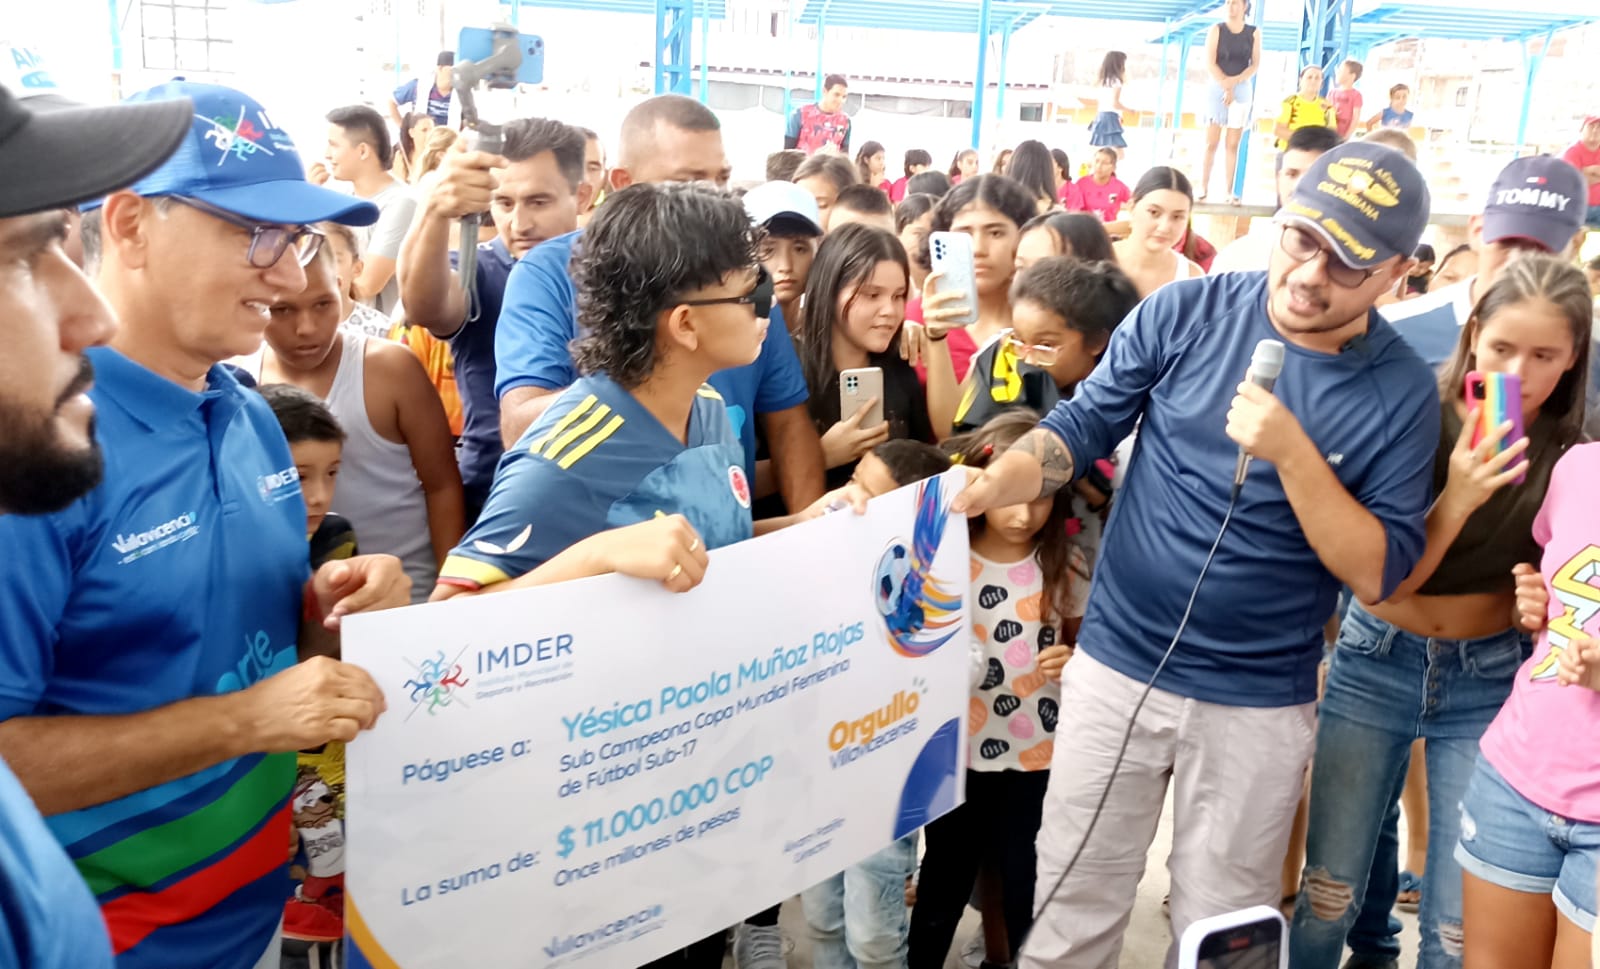 Alcaldía de Villavicencio entregó $11 millones a la futbolista llanera Yesica Muñoz 1